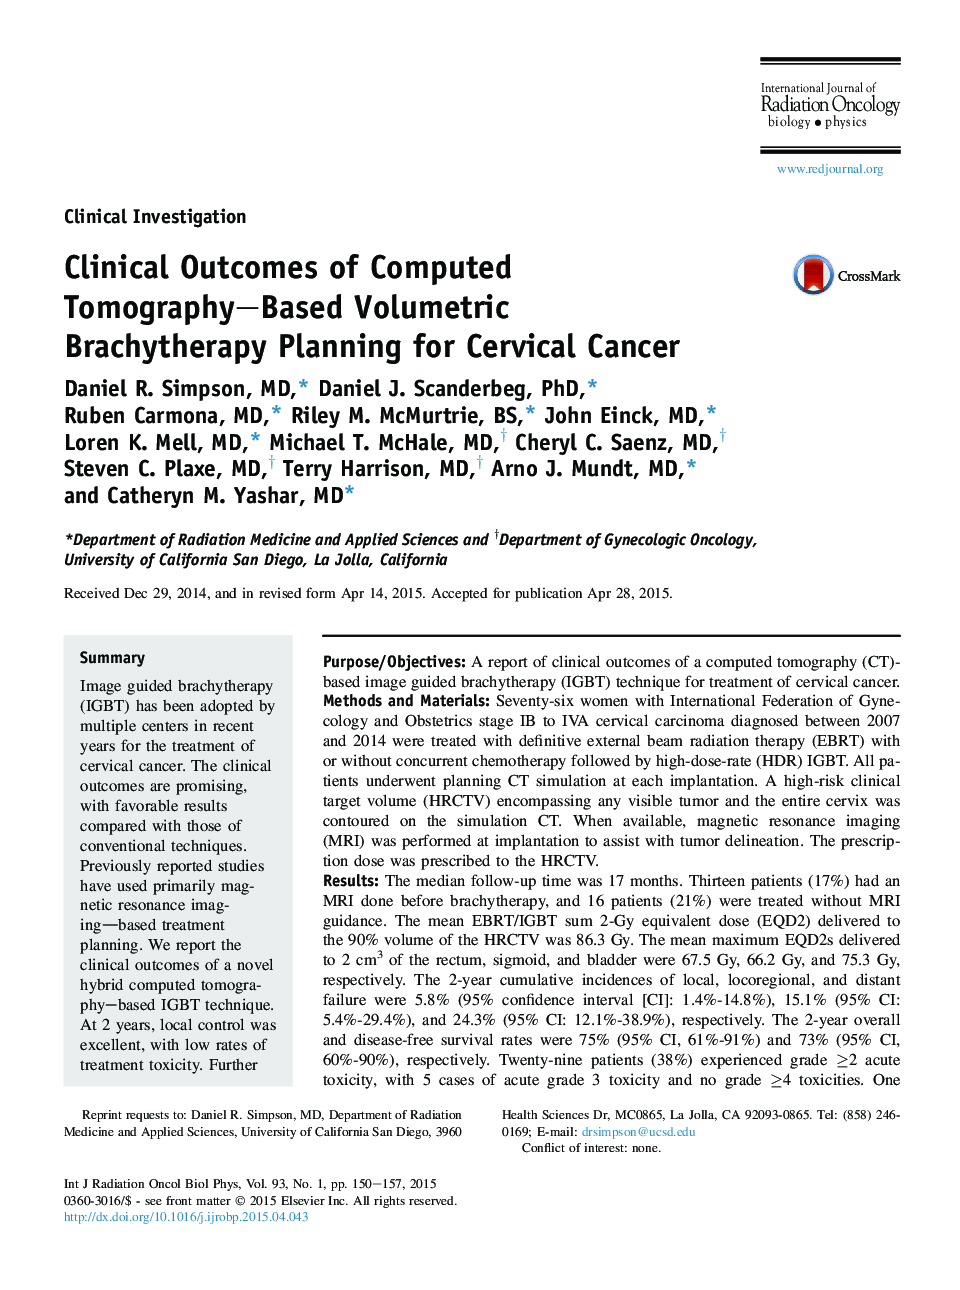 نتایج کلینیکی برنامه ریزی براکیتریپیک حجمی بر اساس توموگرافی کامپیوتری برای سرطان دهانه رحم 